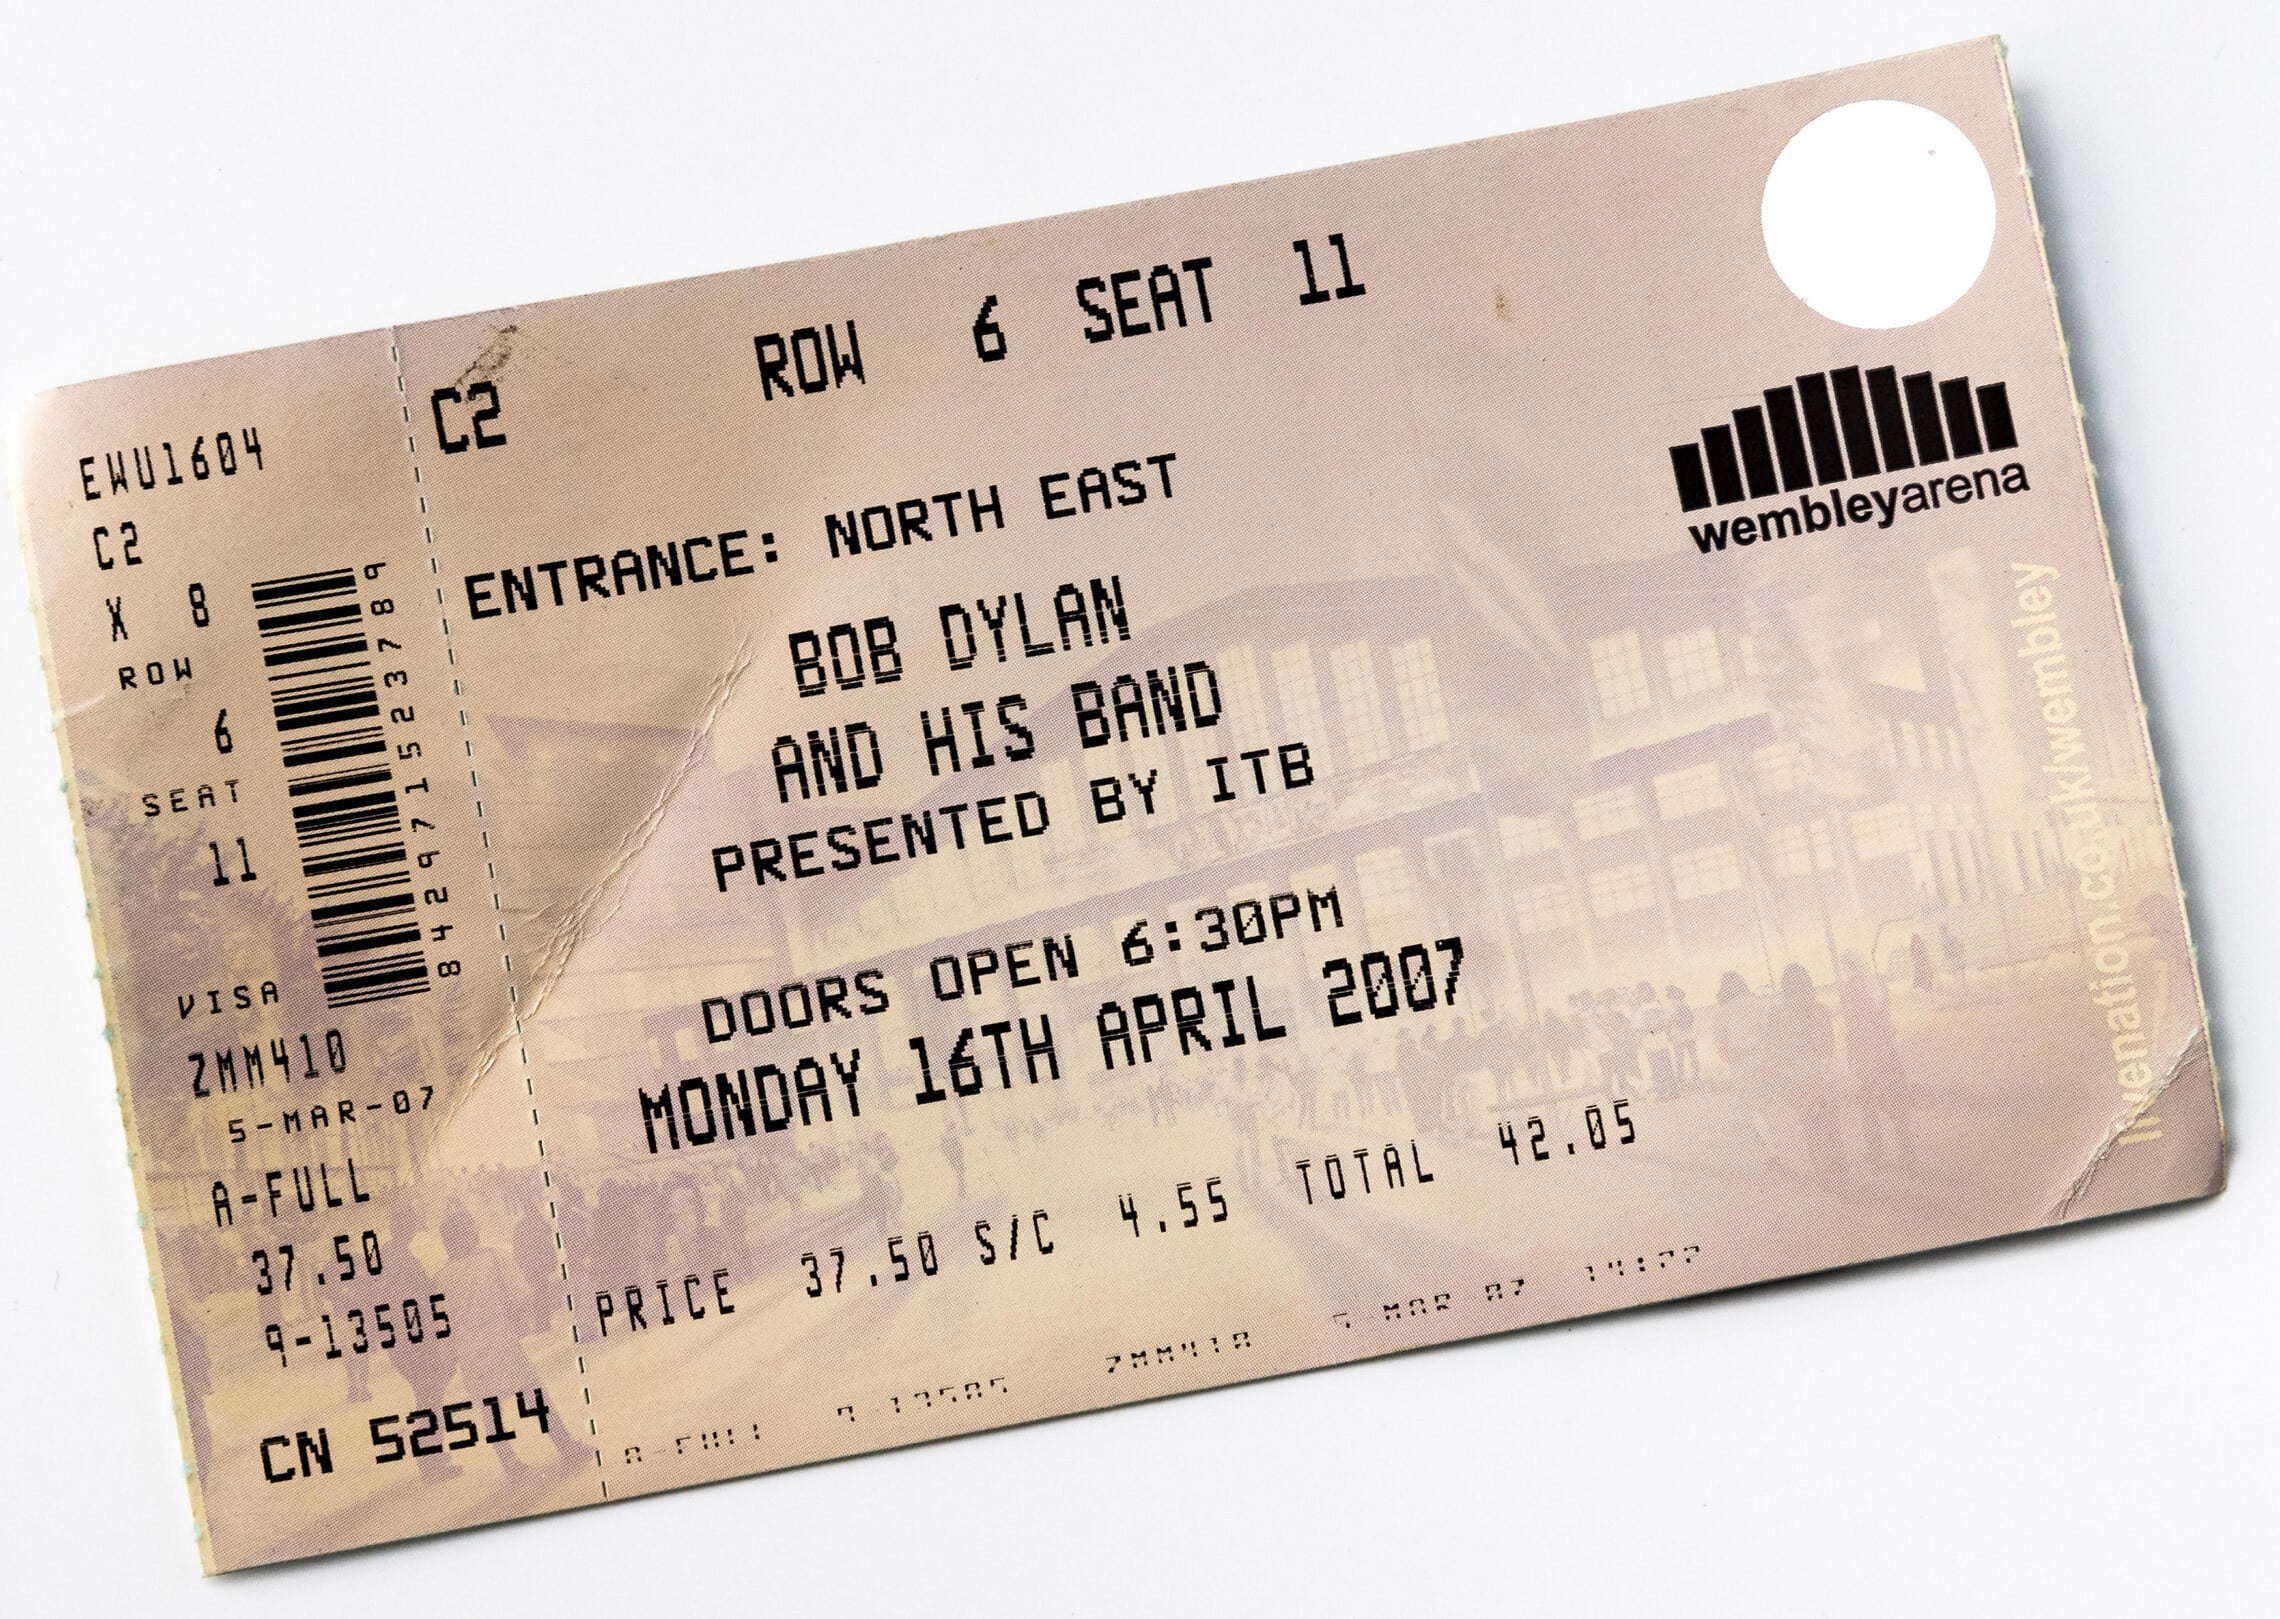 כרטיס להופעה של בוב דילן בוומבלי, לונדון, ב-2007 (צילום: Alan Burles / Alamy)